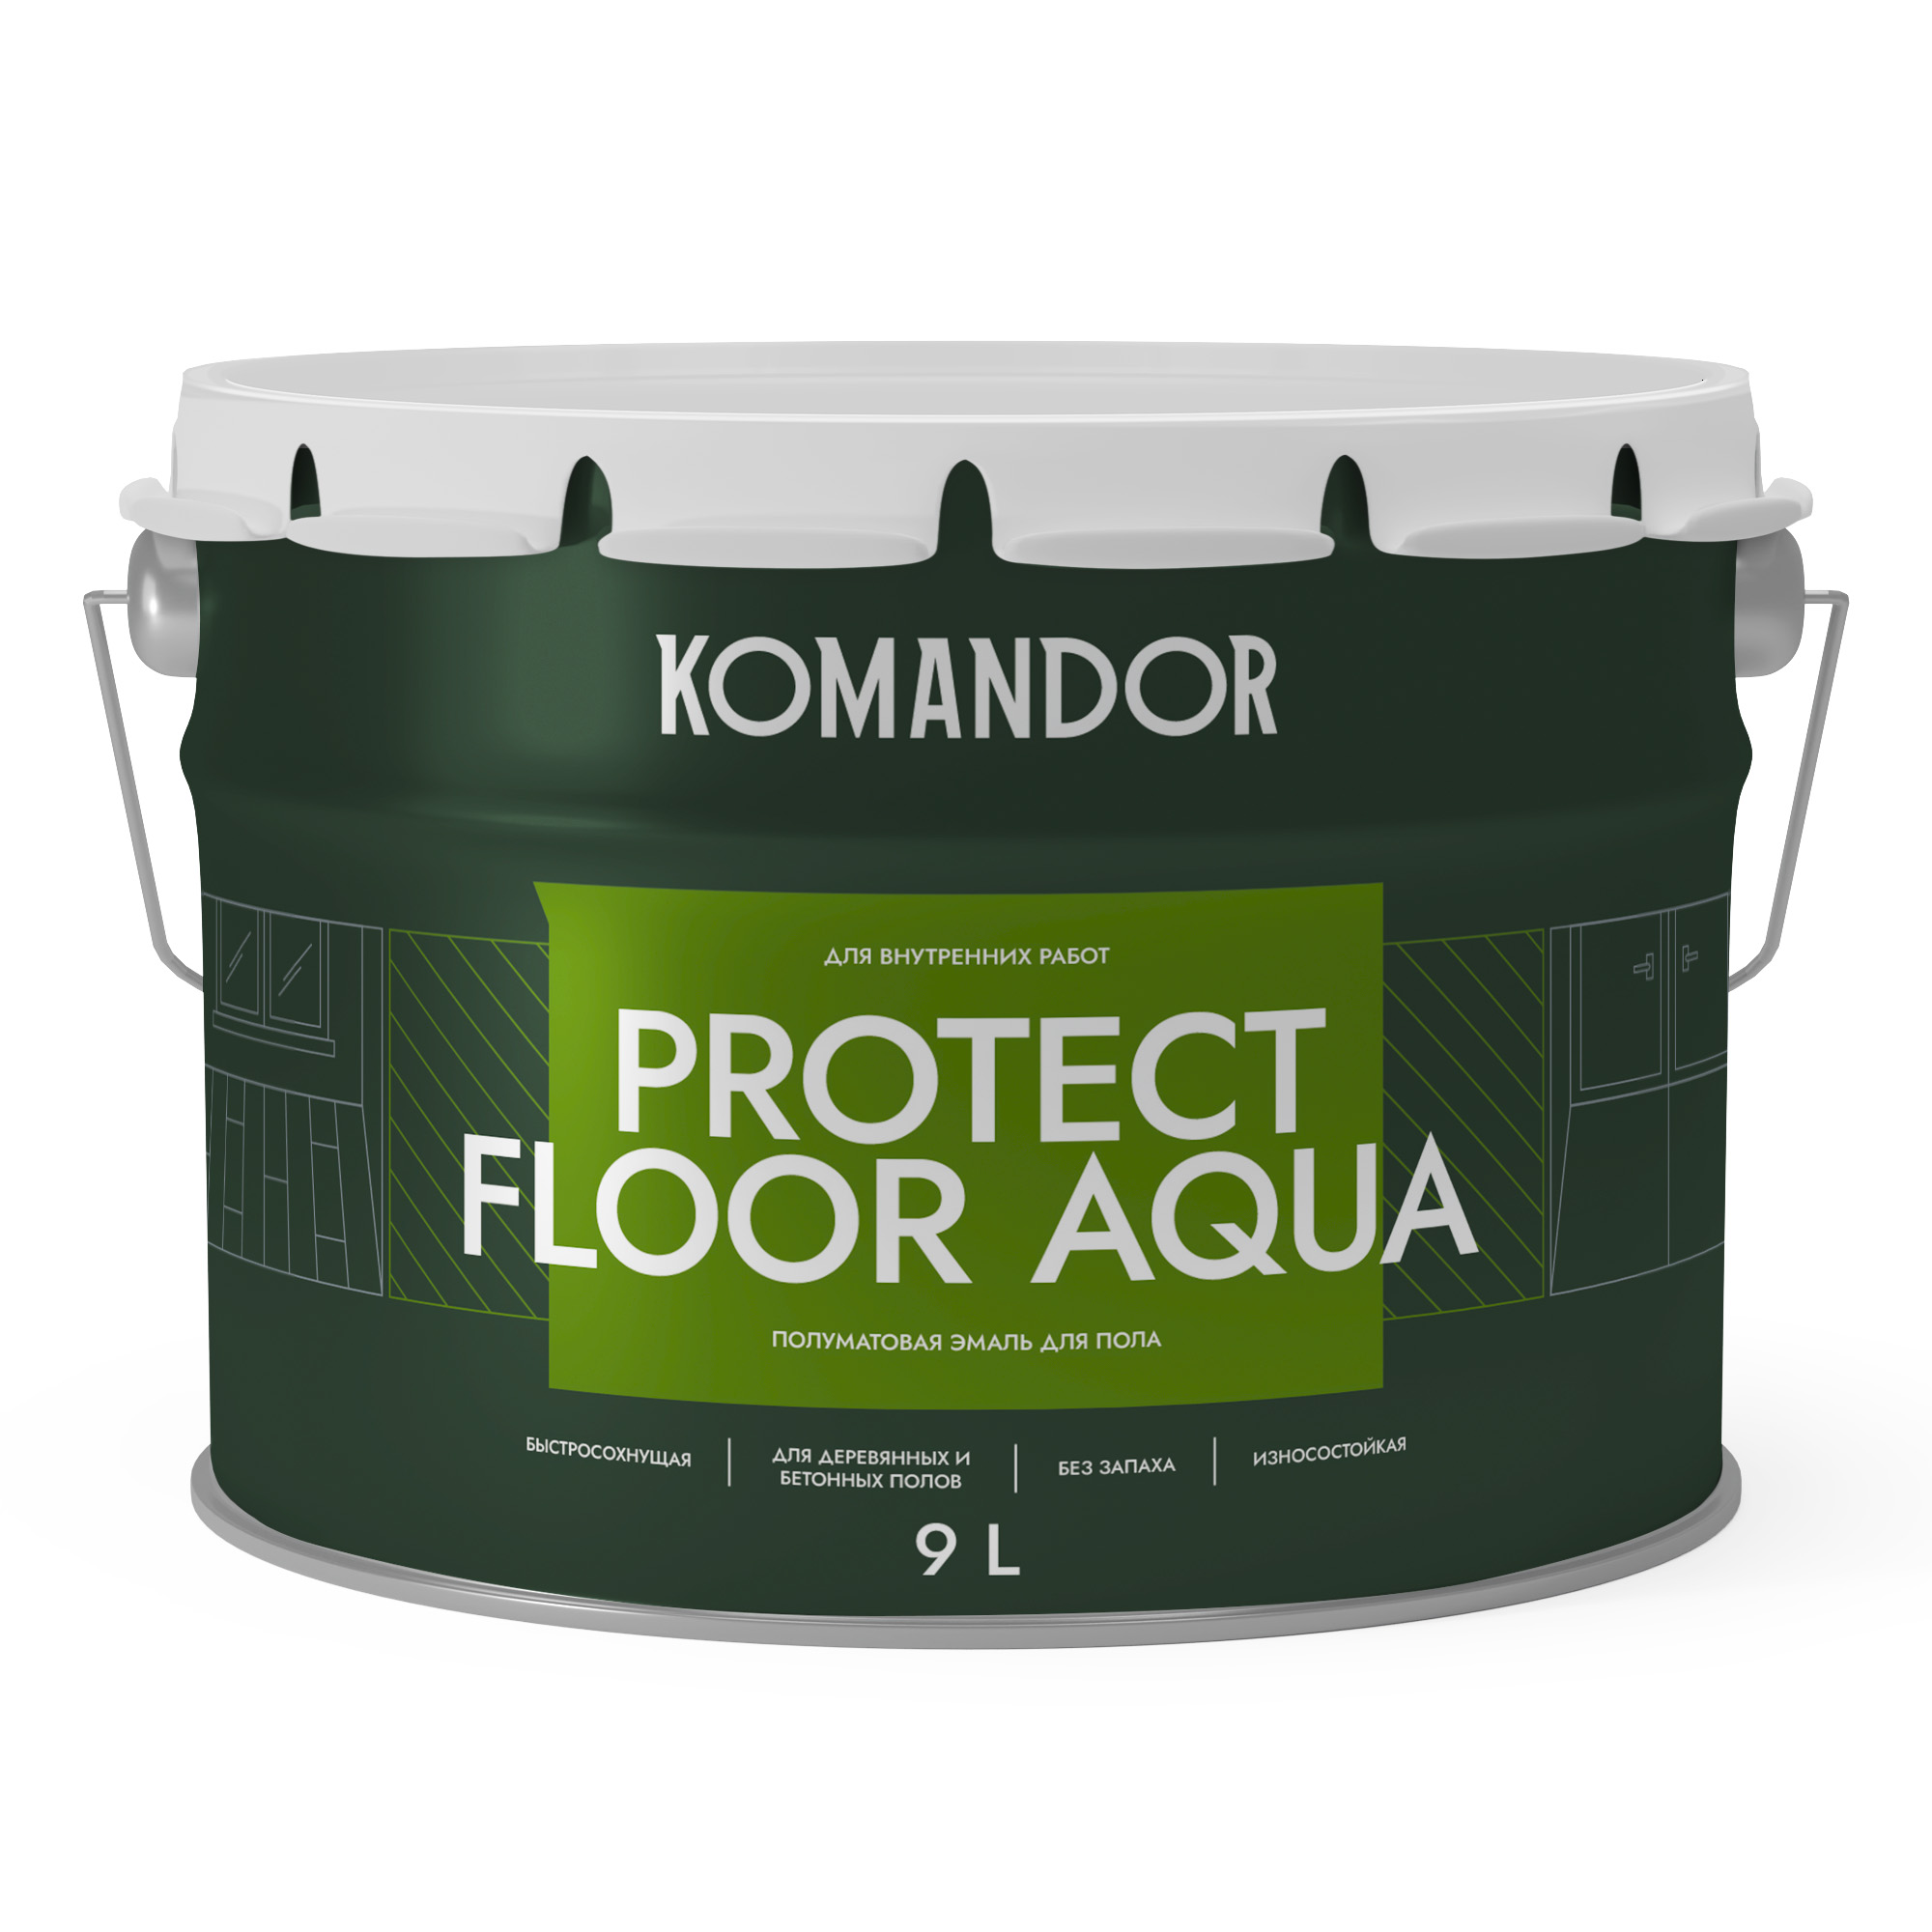 Эмаль для пола и лестниц Komandor Protect Floor Aqua A S1314001010 полуматовая 9 л